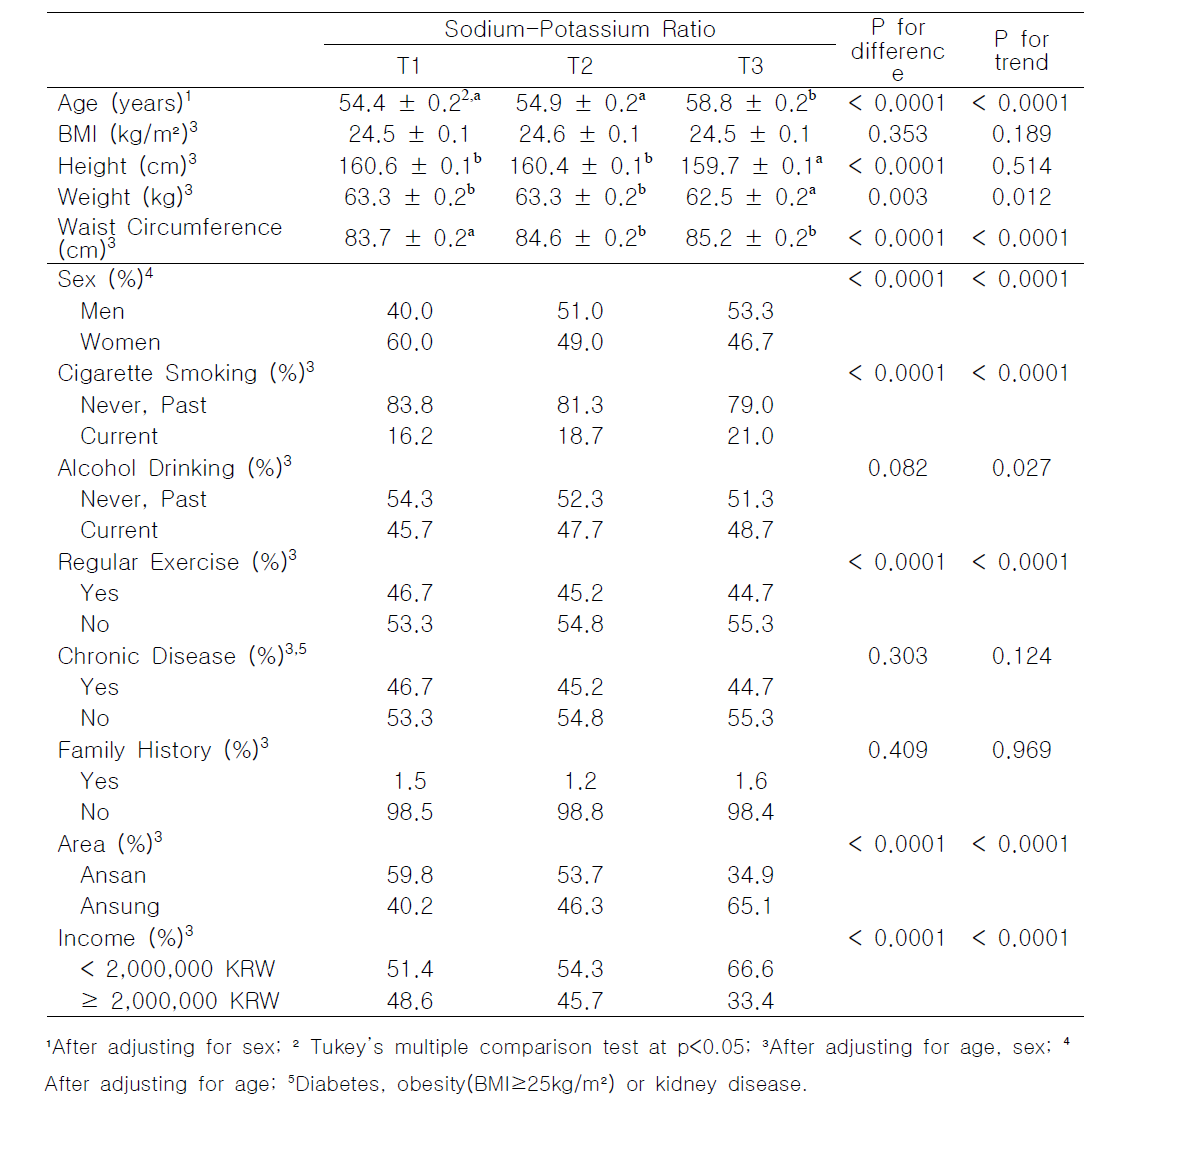 Distribution of confounding factors according to dietary sodium-potassium ratio in Sample 2